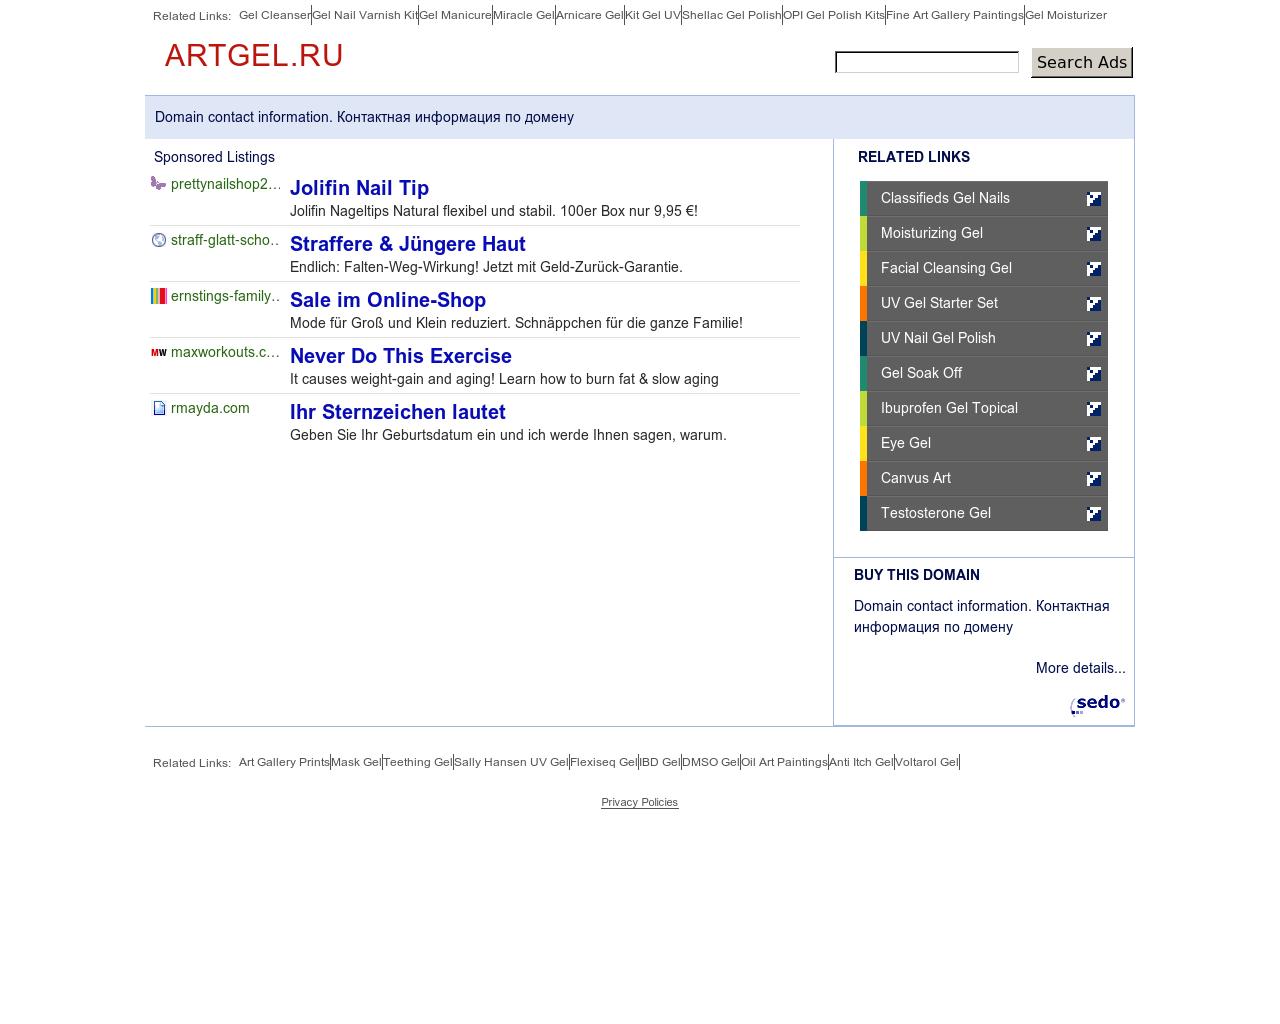 Изображение сайта artgel.ru в разрешении 1280x1024